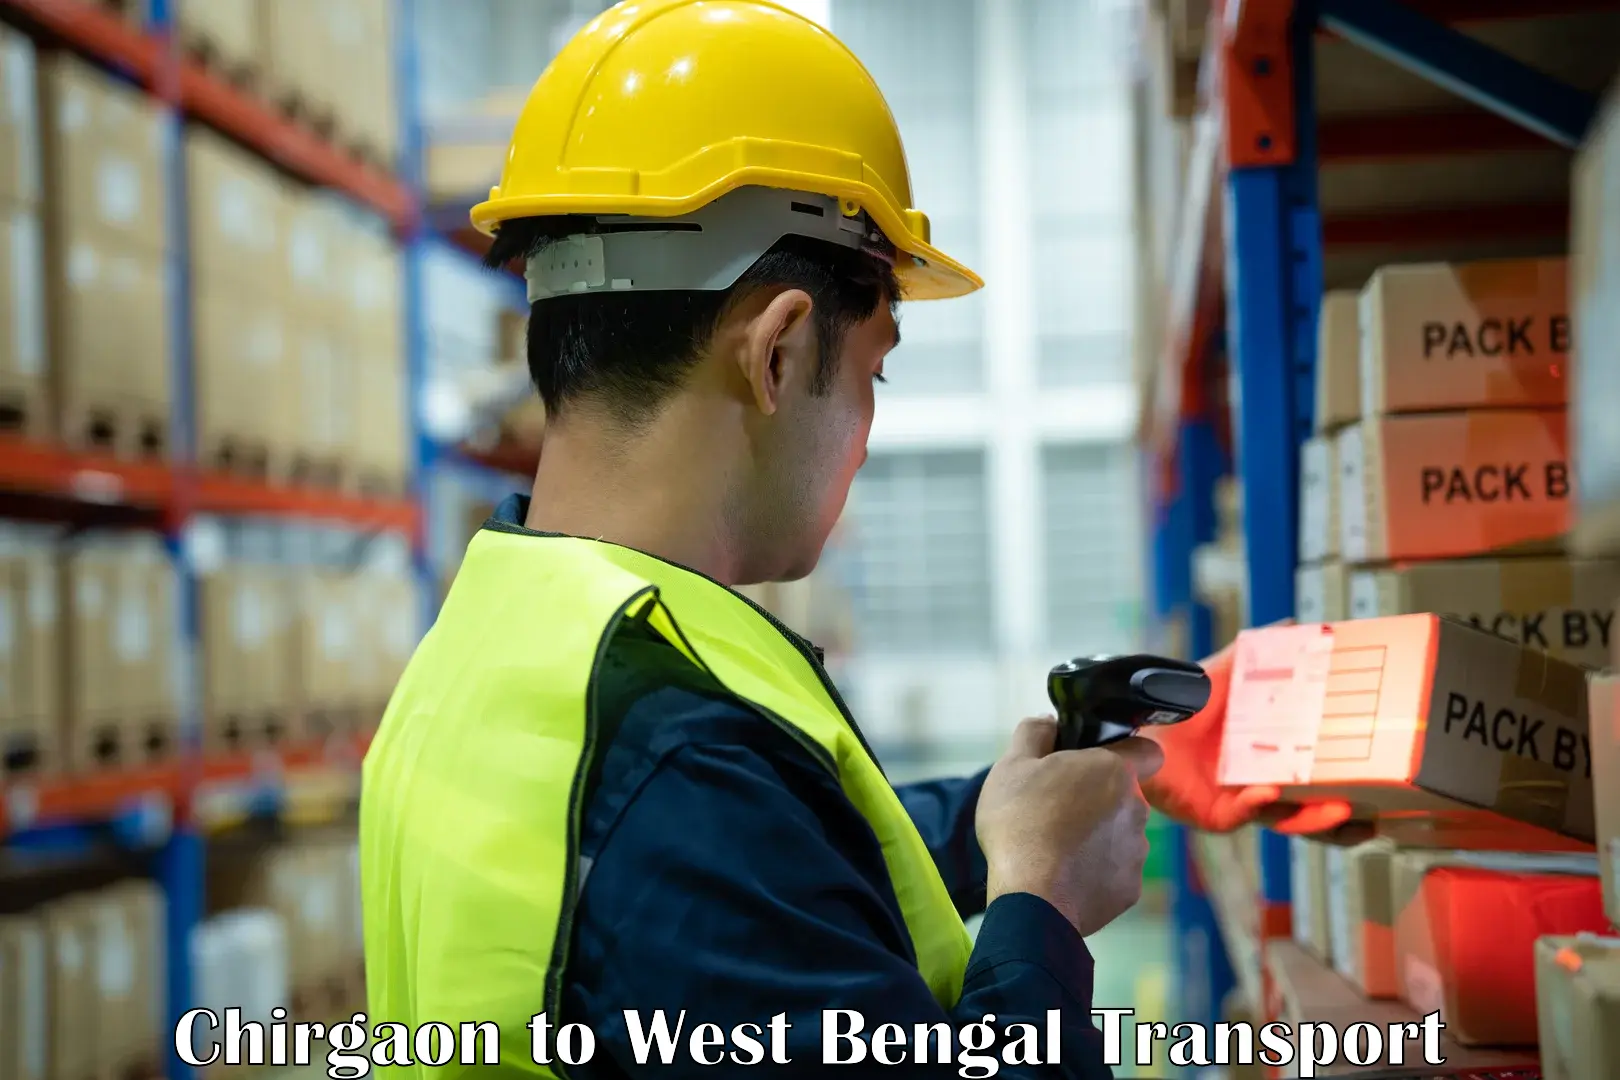 Furniture transport service Chirgaon to Kolkata